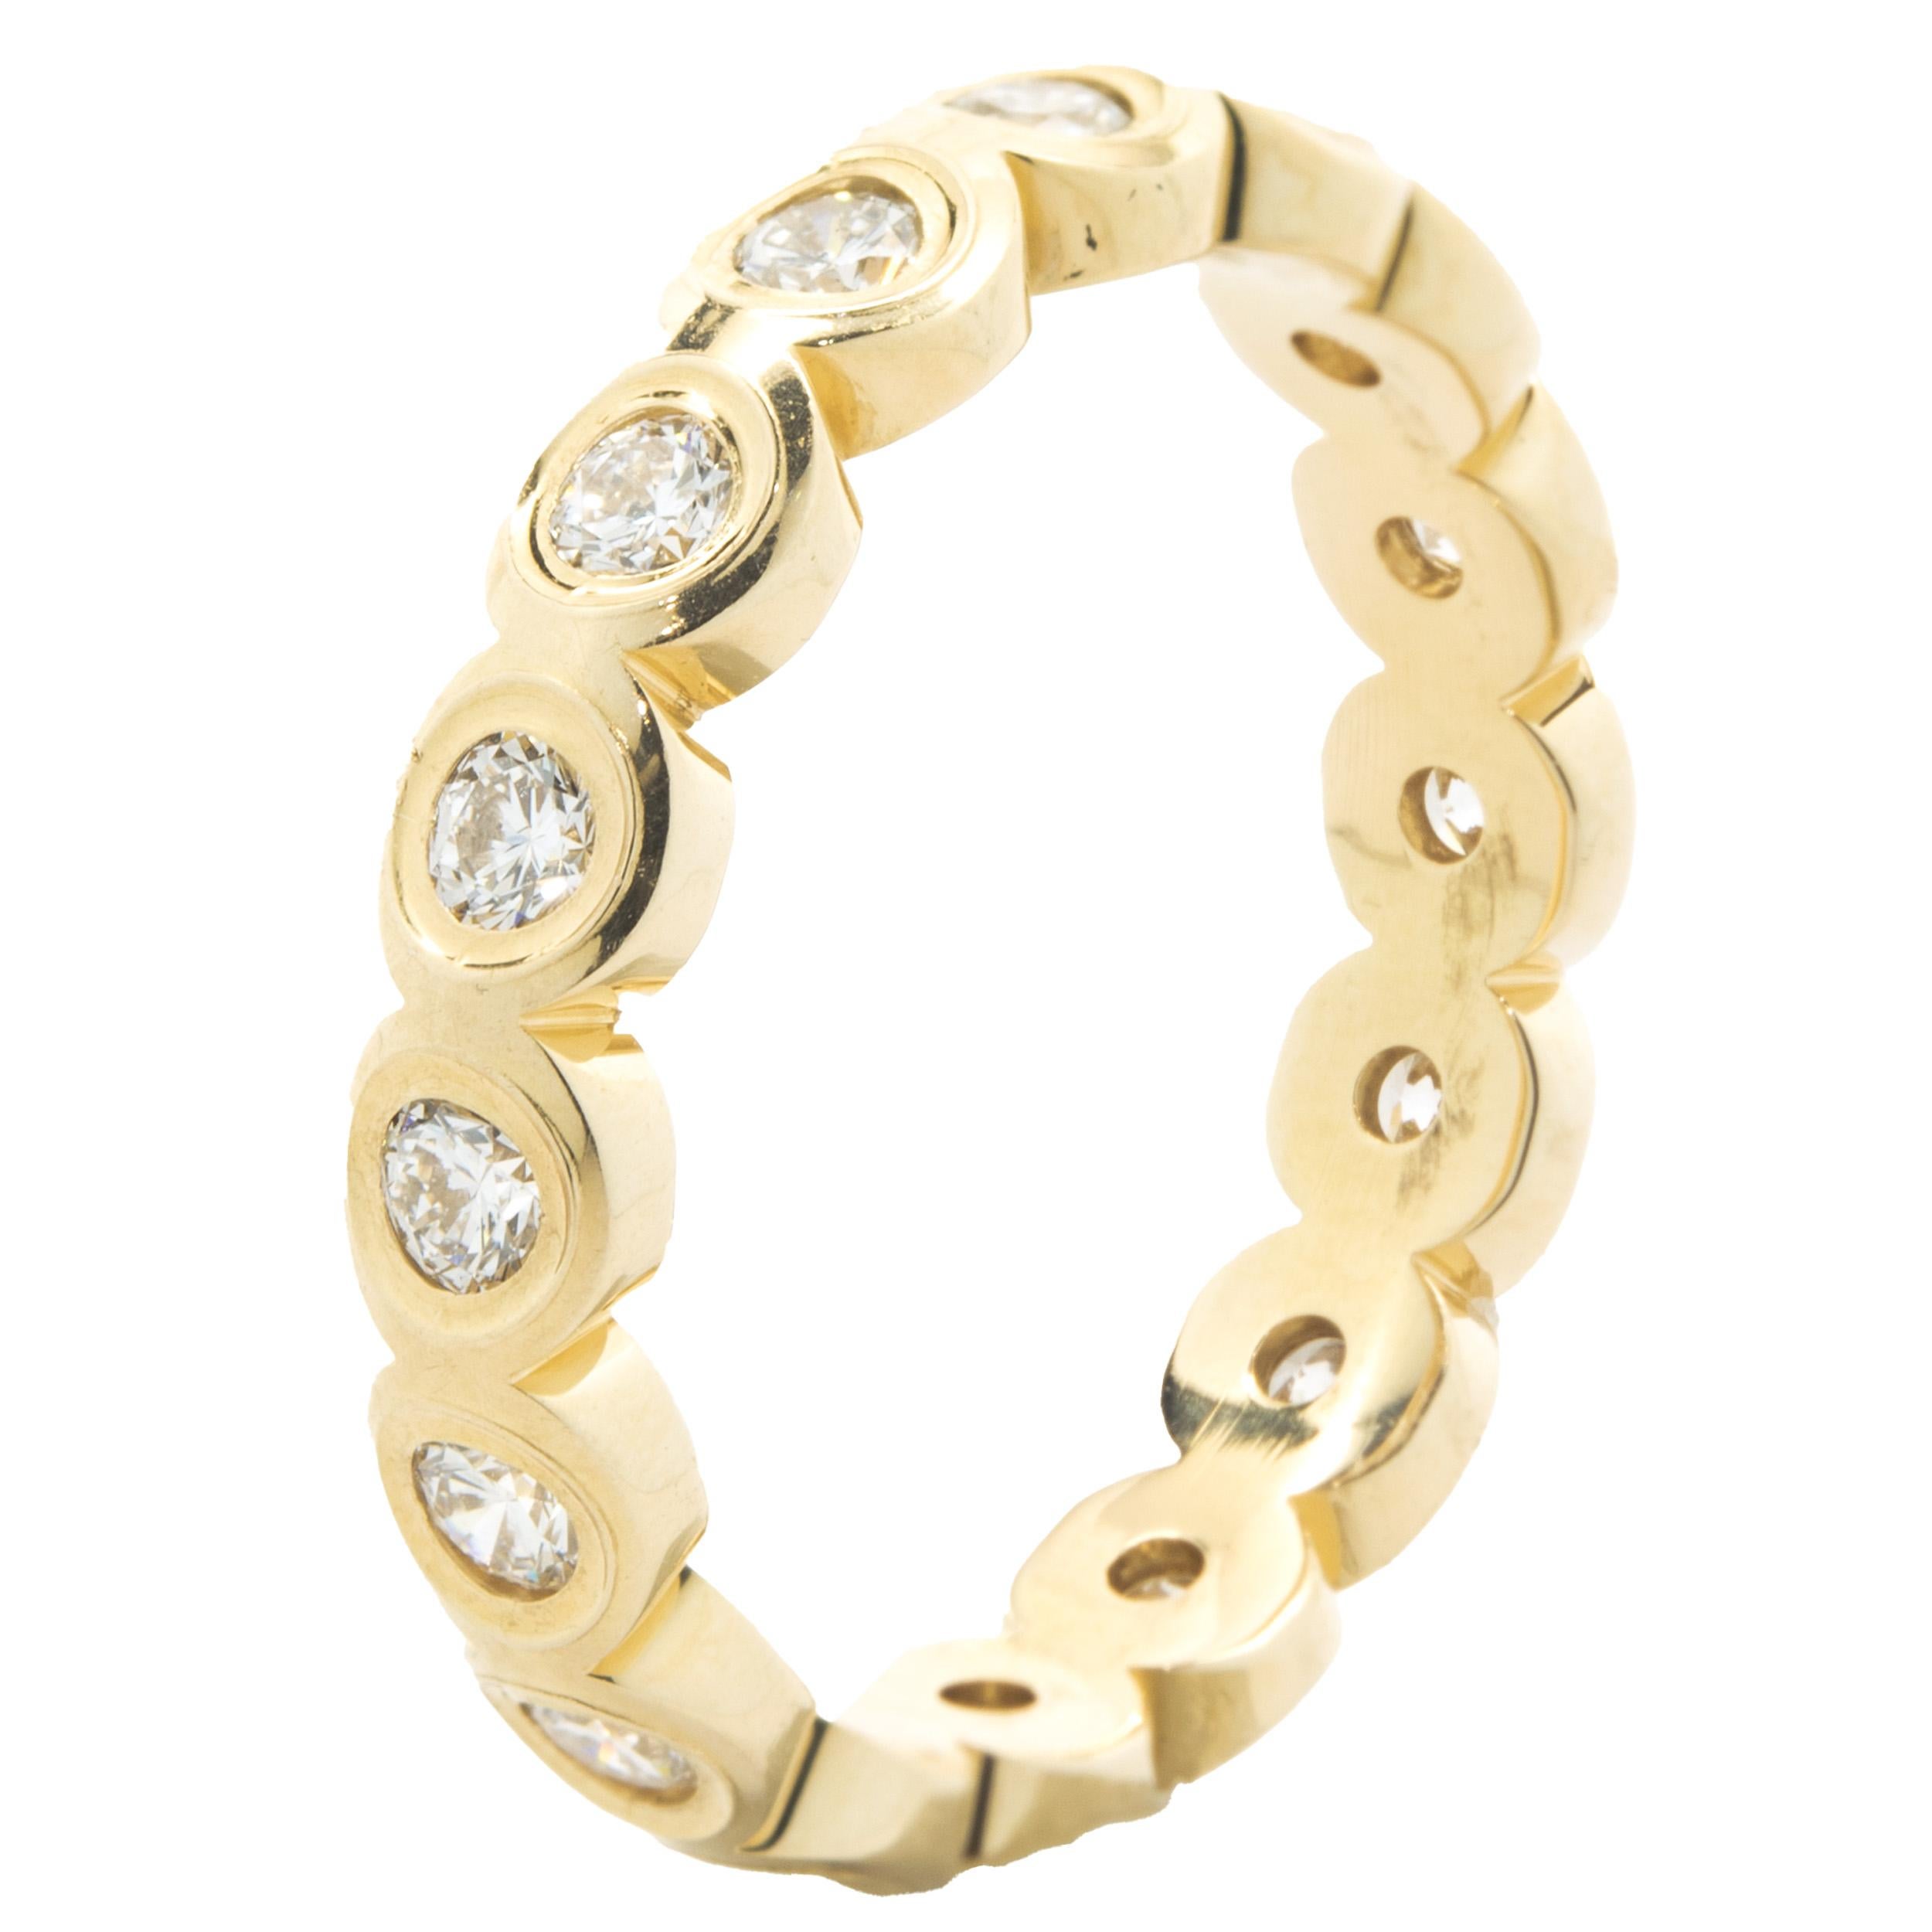 Designer: Benutzerdefiniert
MATERIAL: 14K Gelbgold
Diamanten: 16 runde Brillantschliffe = 0,51cttw
Farbe: H 
Klarheit: SI1
Größe: 6,5
Abmessungen: Ring misst 4 mm in der Breite
Gewicht: 3.30 Gramm